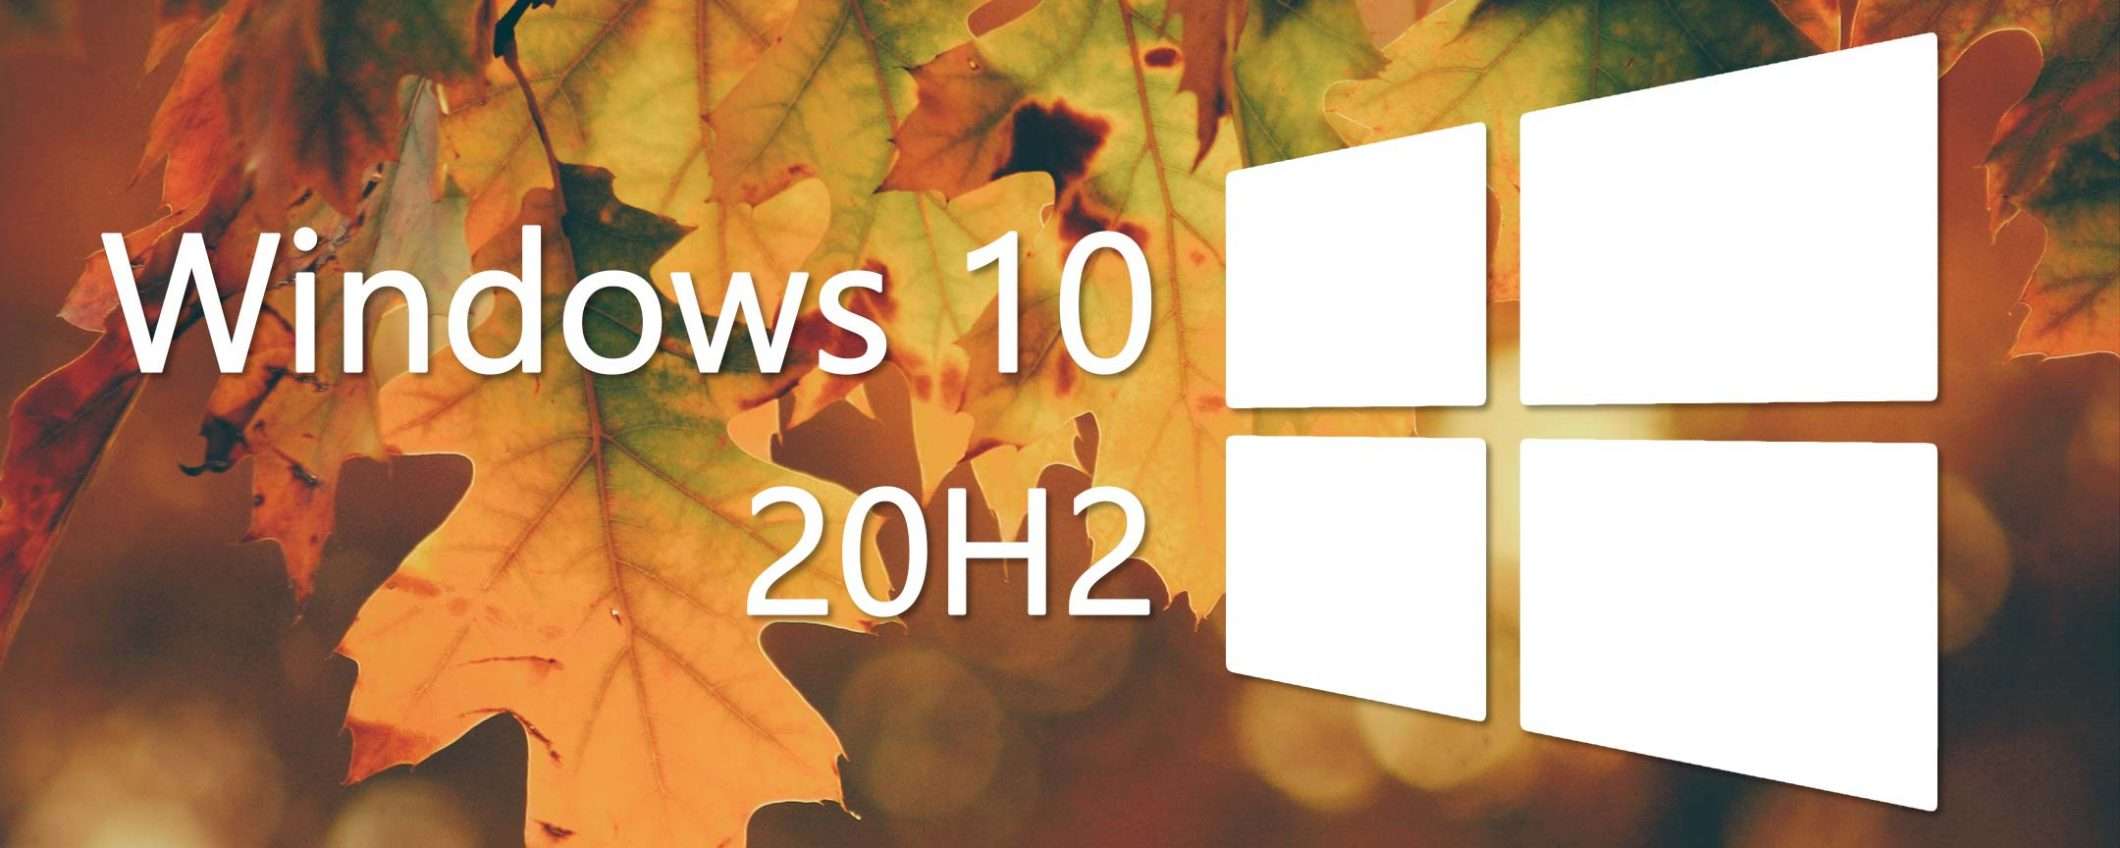 Windows 10 20H2 non sarà un major update